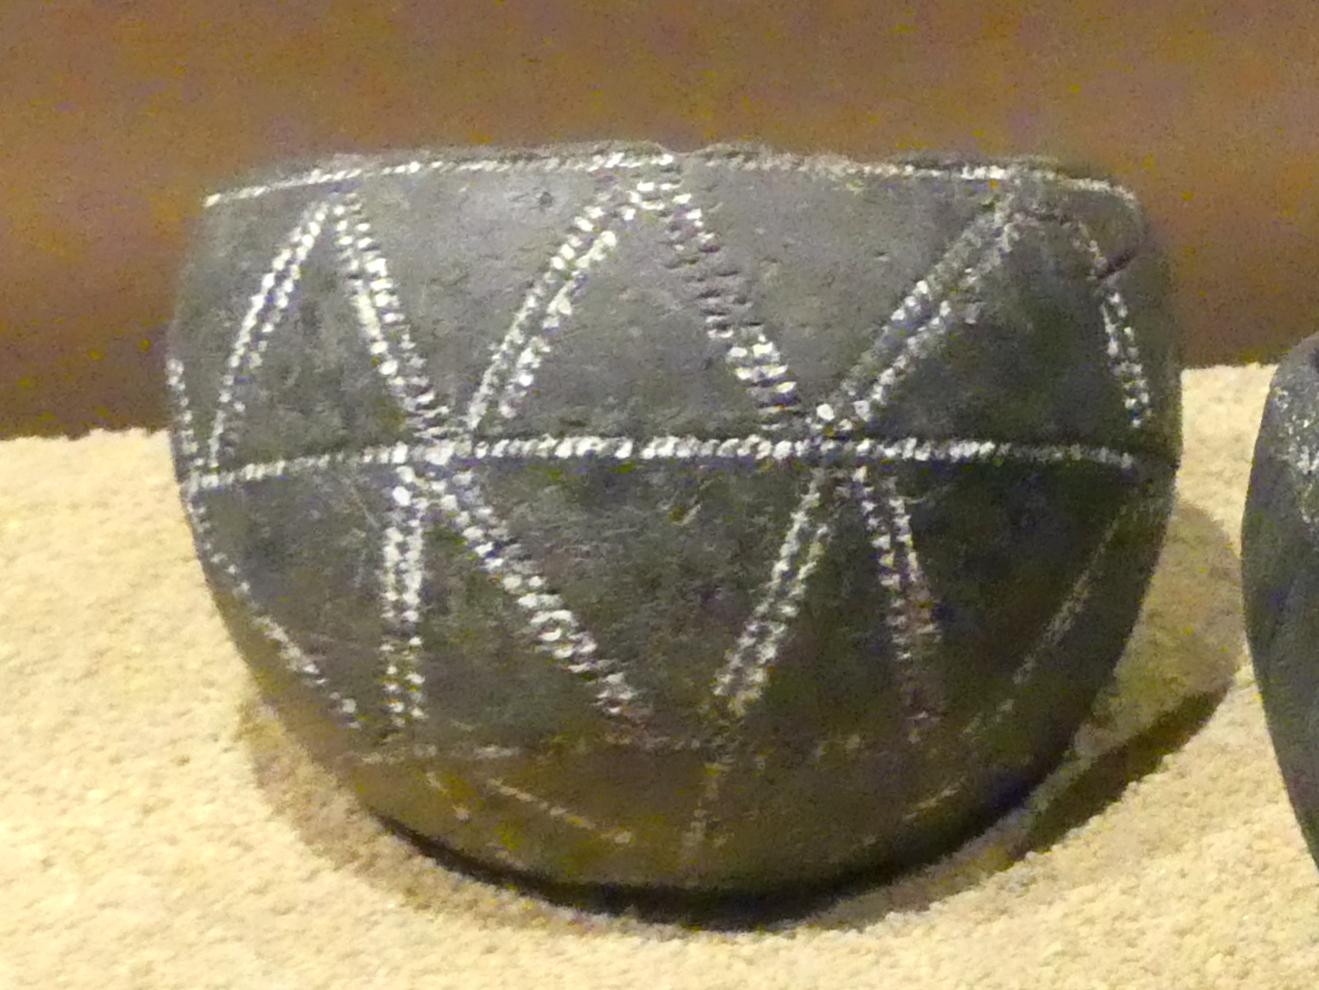 Kugelförmiger Napf mit punktiertem Dreiecksmuster und geritztem Streifen, C-Gruppe, 1900 - 1550 v. Chr., 1900 - 1700 v. Chr.